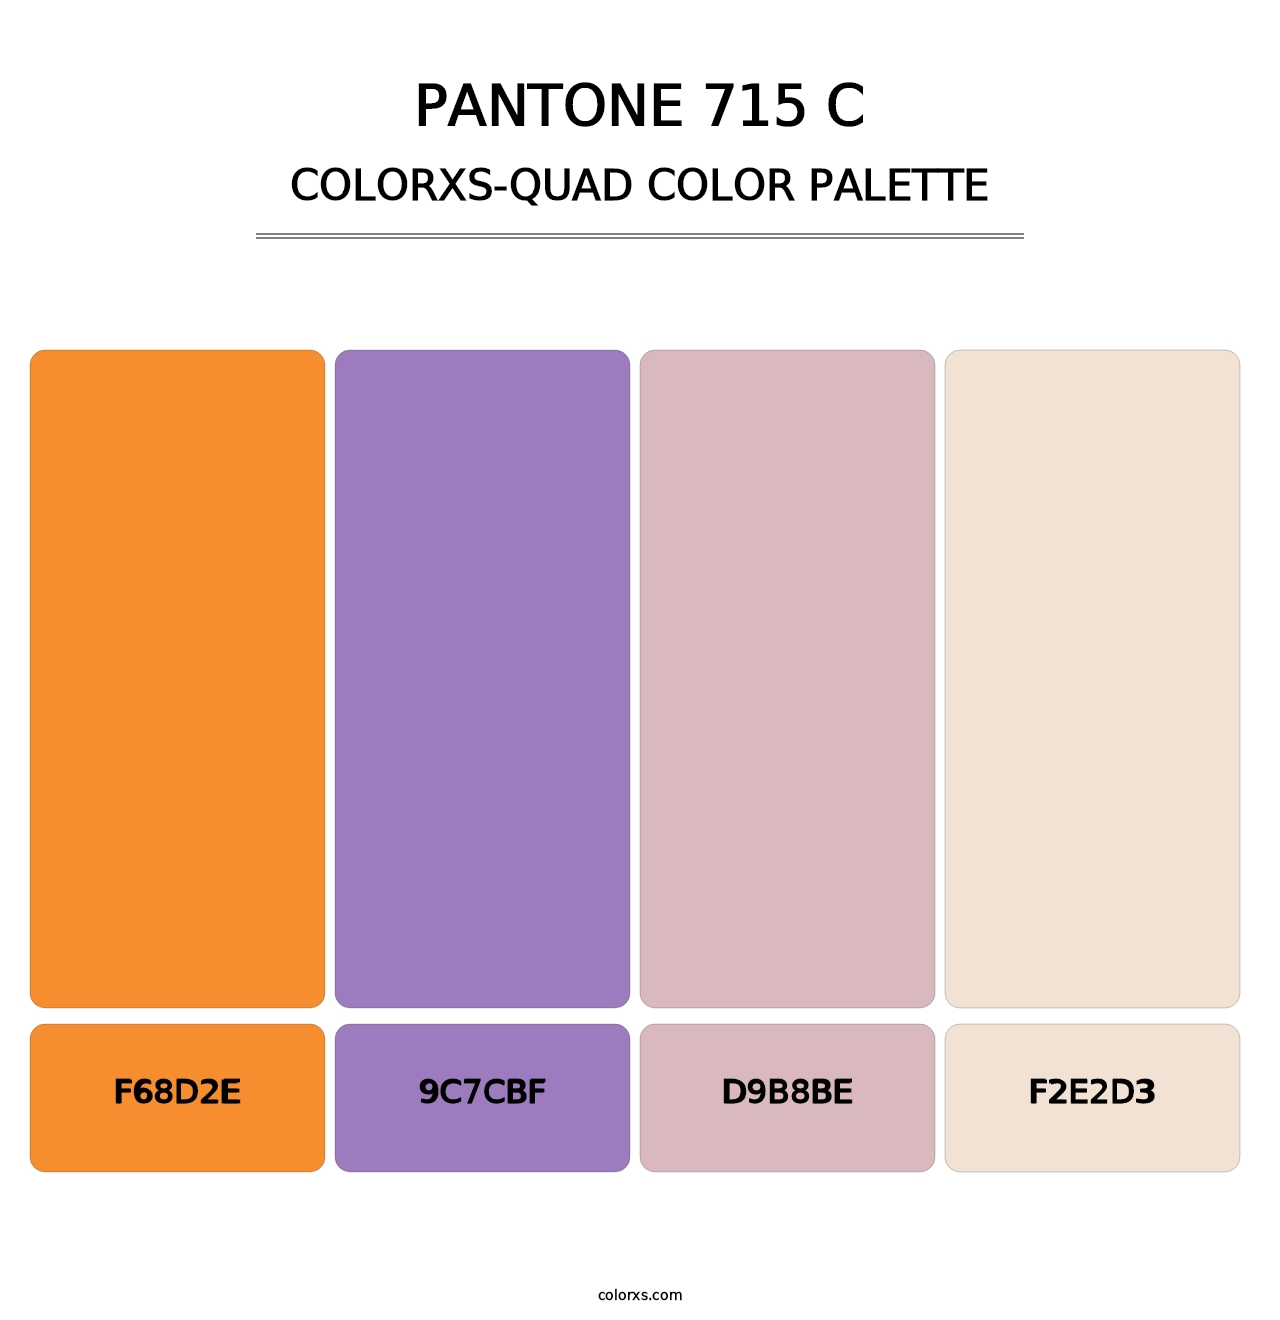 PANTONE 715 C - Colorxs Quad Palette